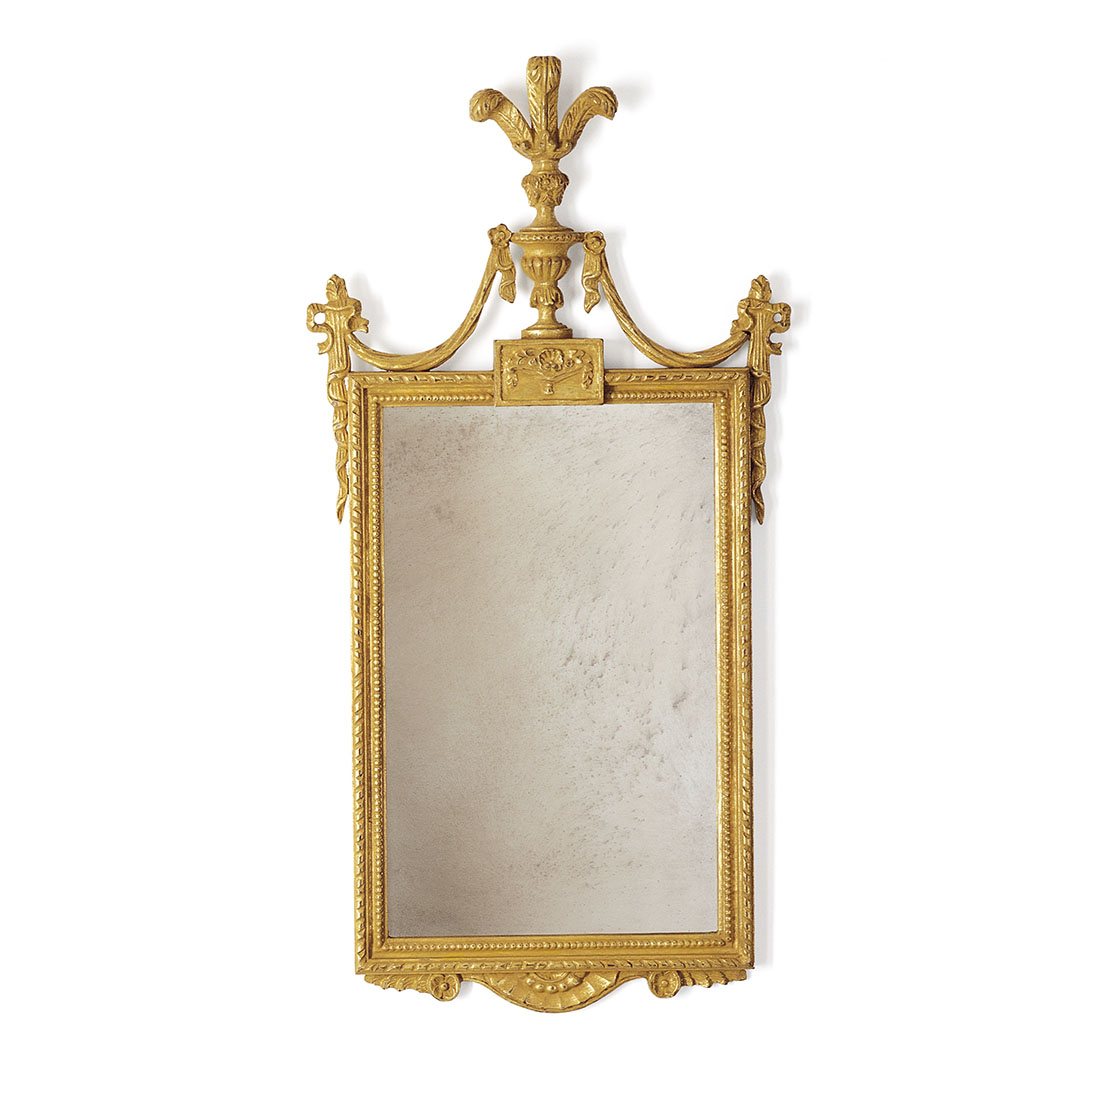 Windsor mirror in Burnt gold - Beaumont & Fletcher